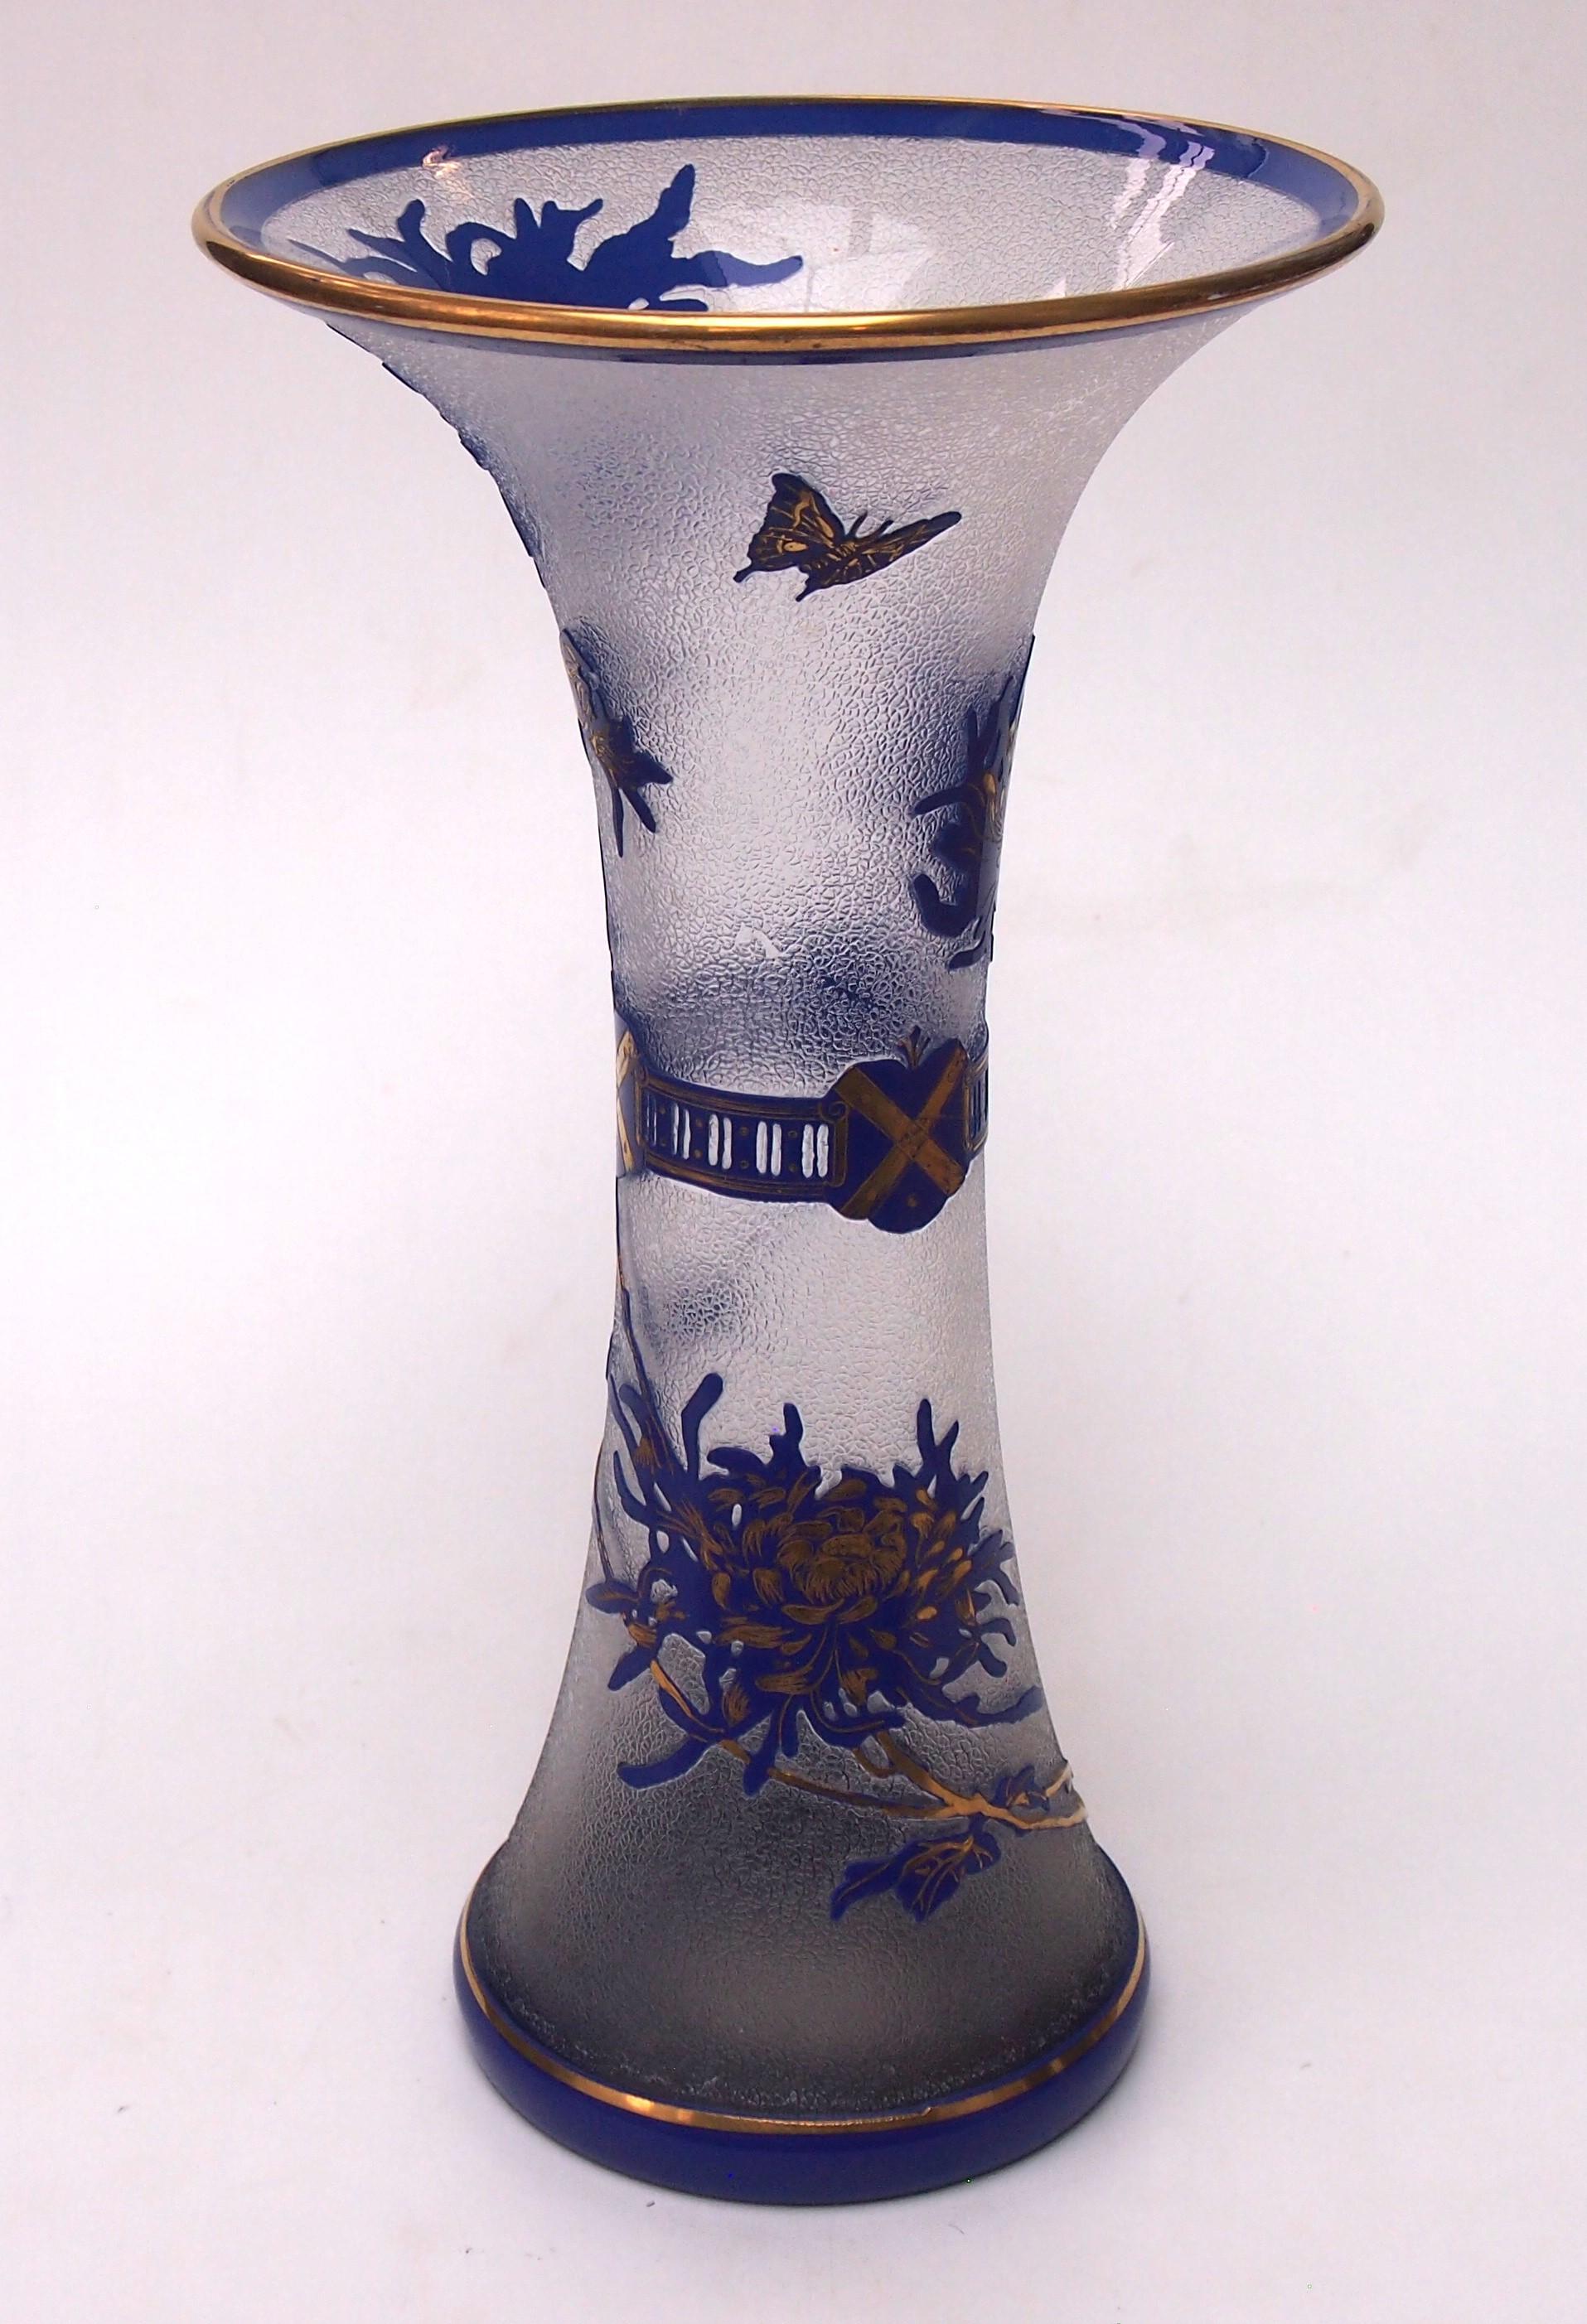 Eine atemberaubende große taillierte Kristall frühe Kamee Vase von der Saint Louis Kristall Werke von Frankreich, in lebendigen dunkelblau geschliffen, um klar - mit einem gefrosteten Blick Hintergrund, Das Bild zeigt eine Mischung aus heraldischen